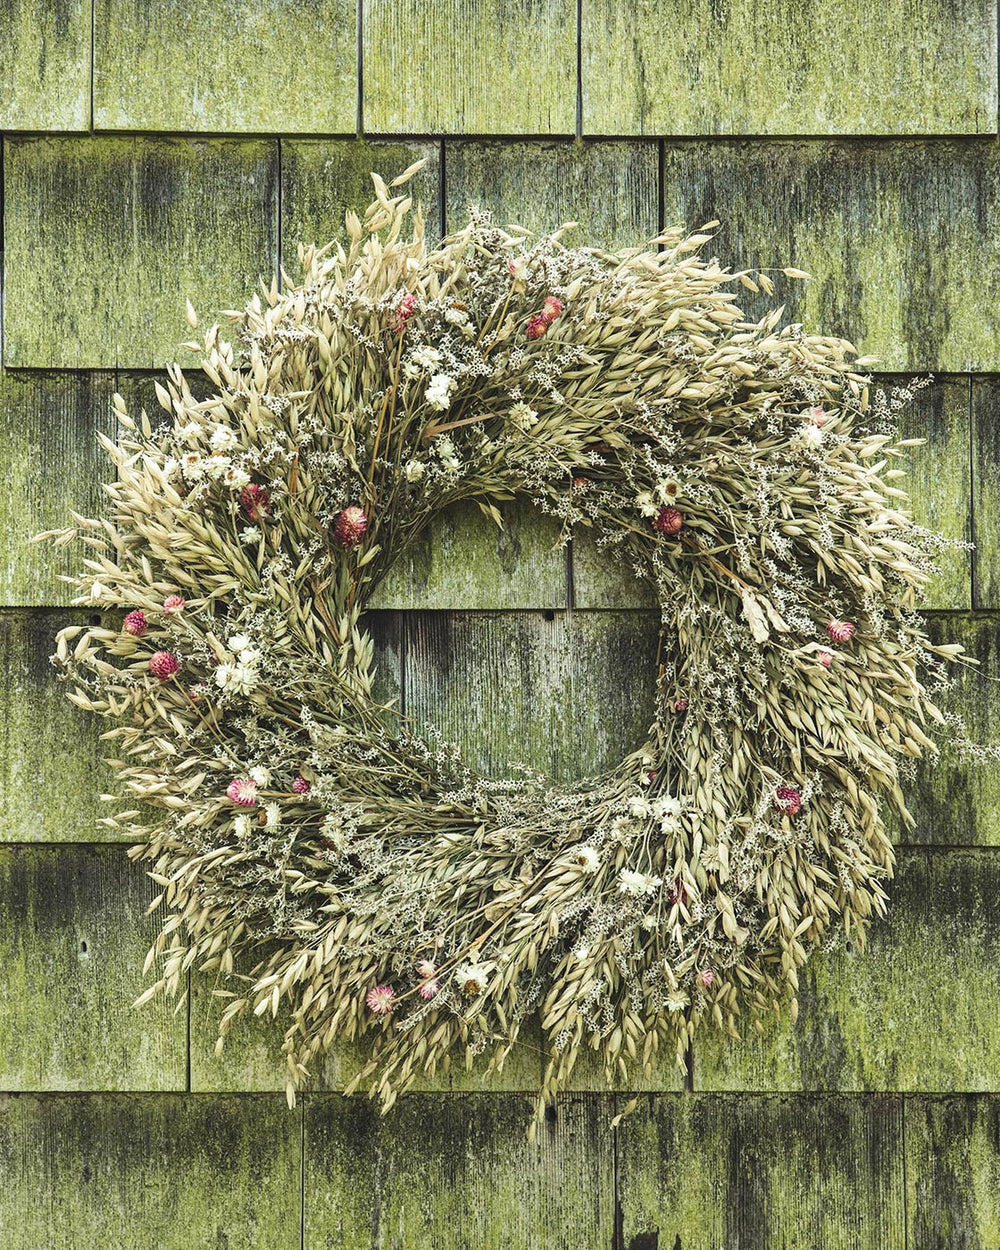 Dried Natural Wreaths